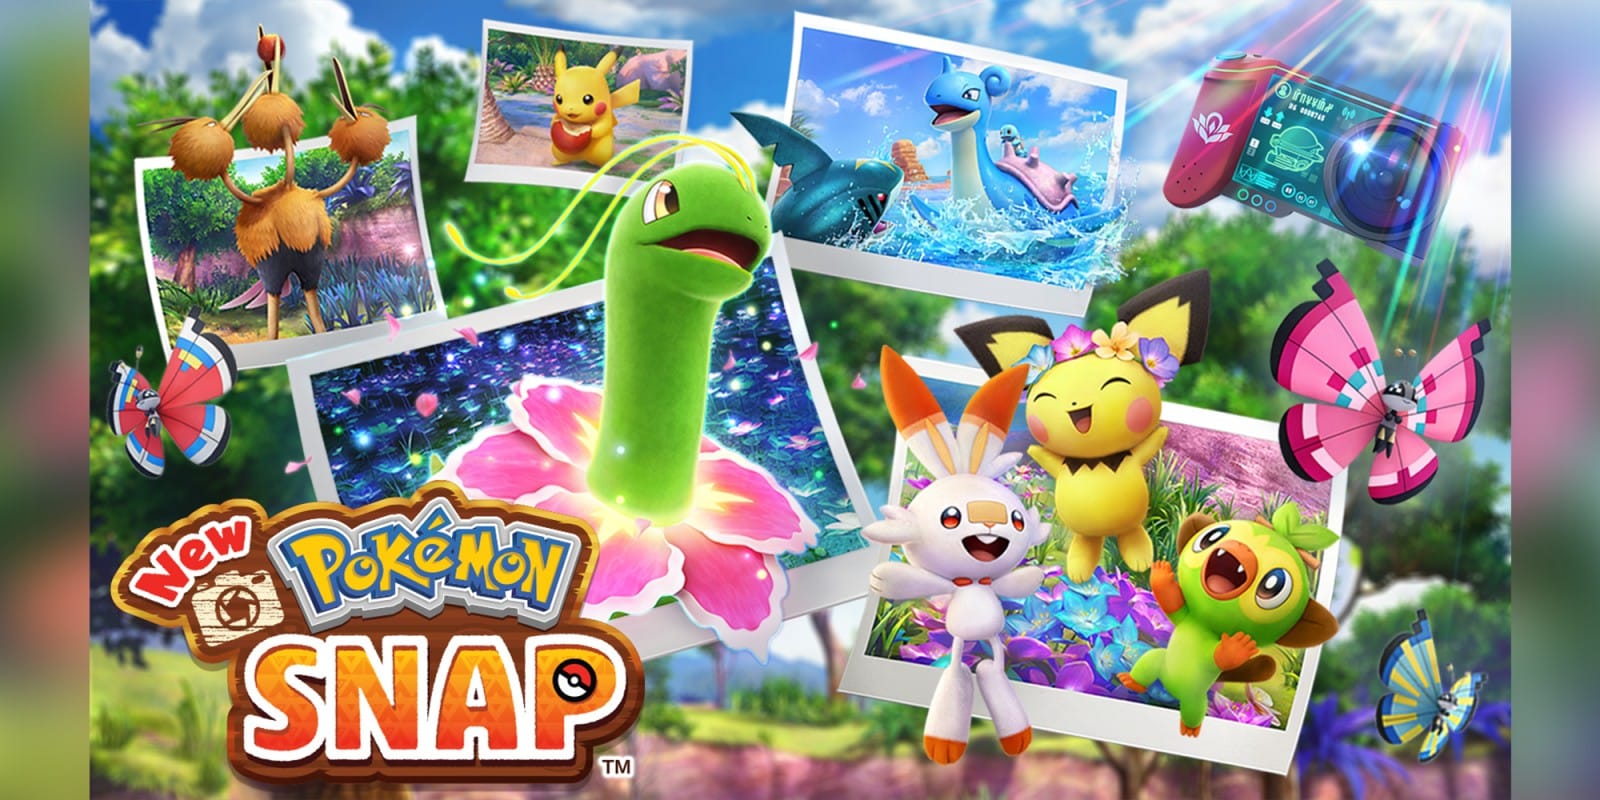 New Pokémon Snap domina le vendite in Inghilterra 2